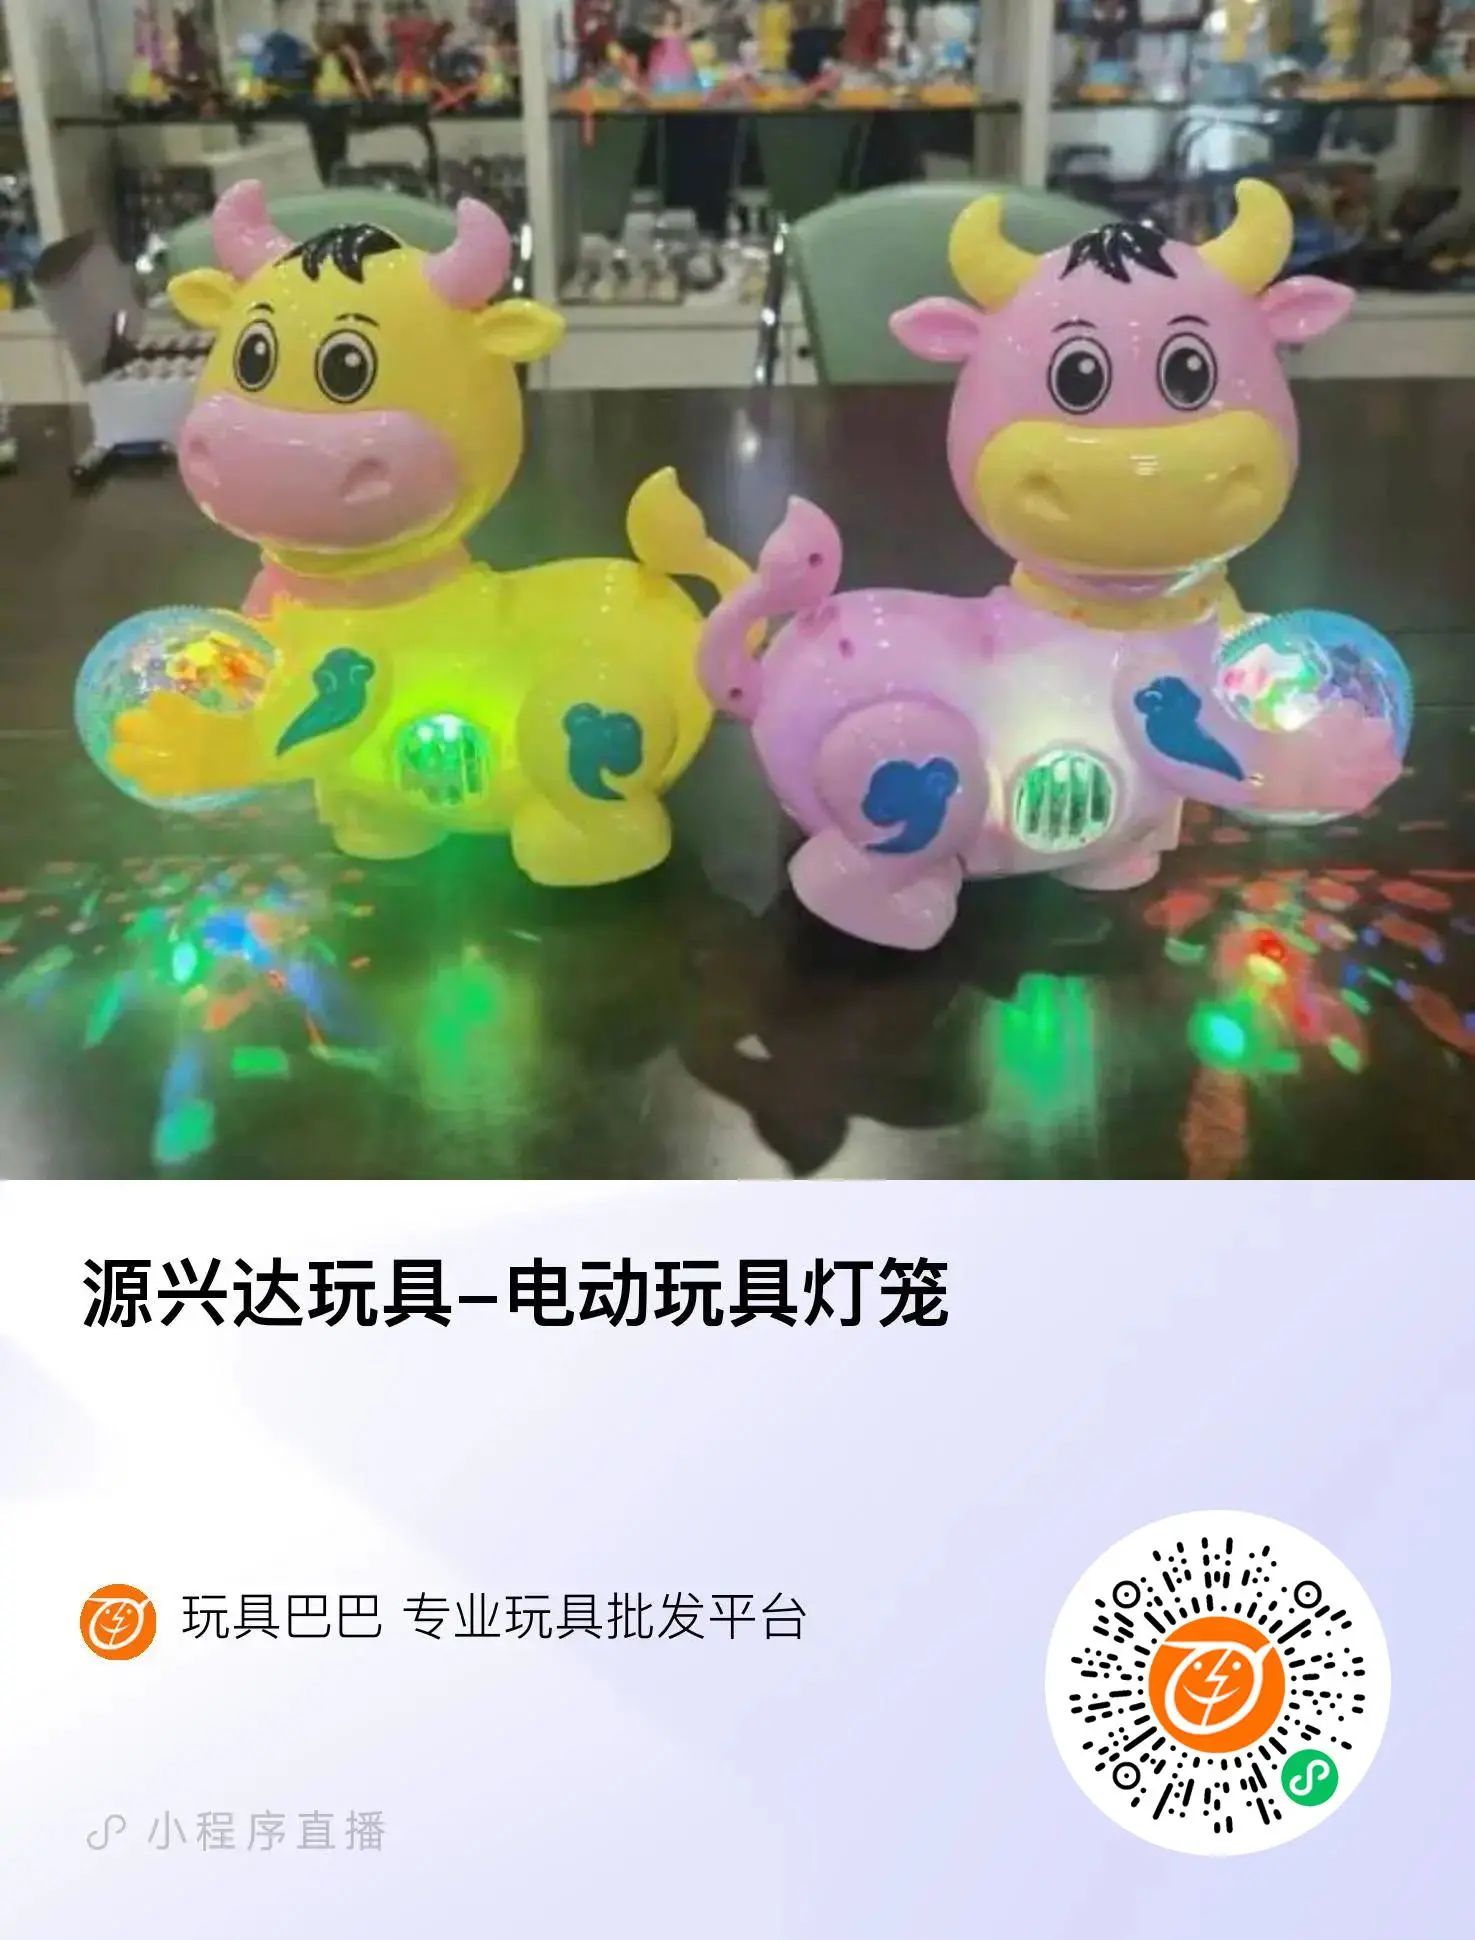 源兴达玩具-电动玩具灯笼